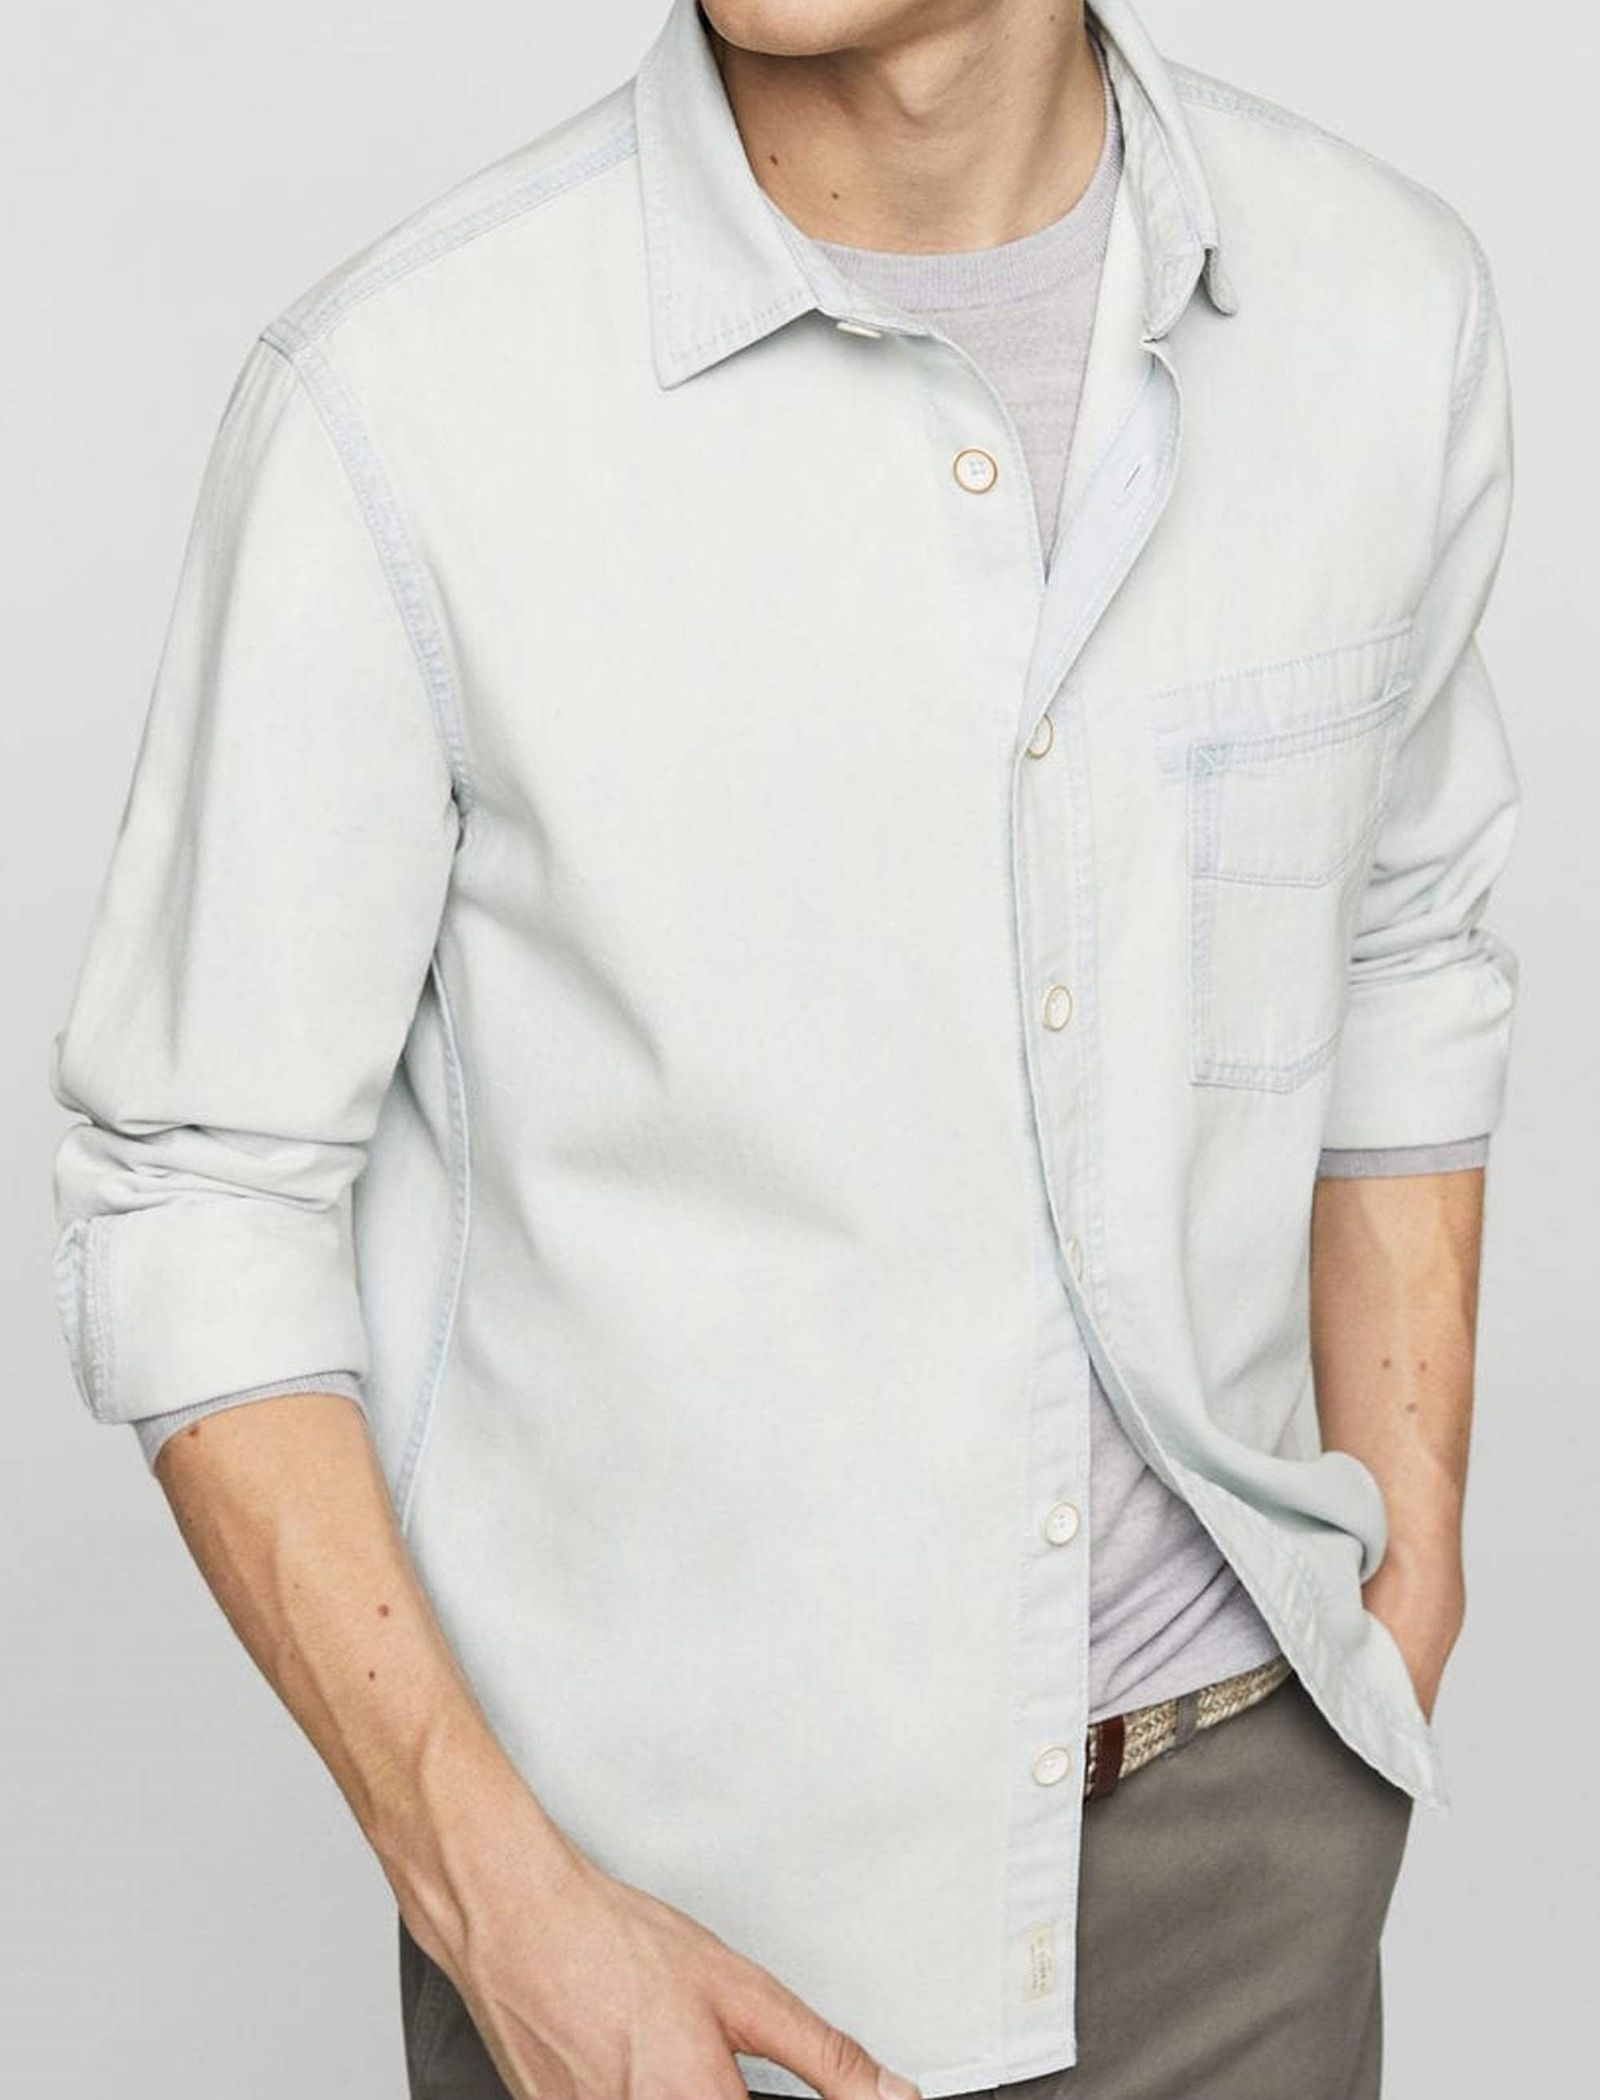 پیراهن جین مردانه - مانگو - آبي روشن  - 3